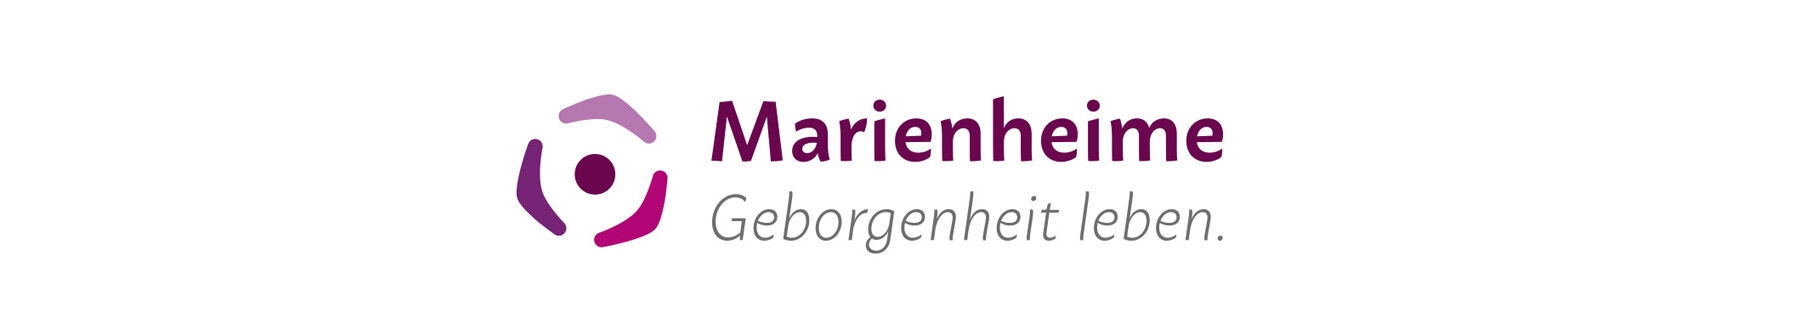 Web-Marienheime-Logo-03.jpg